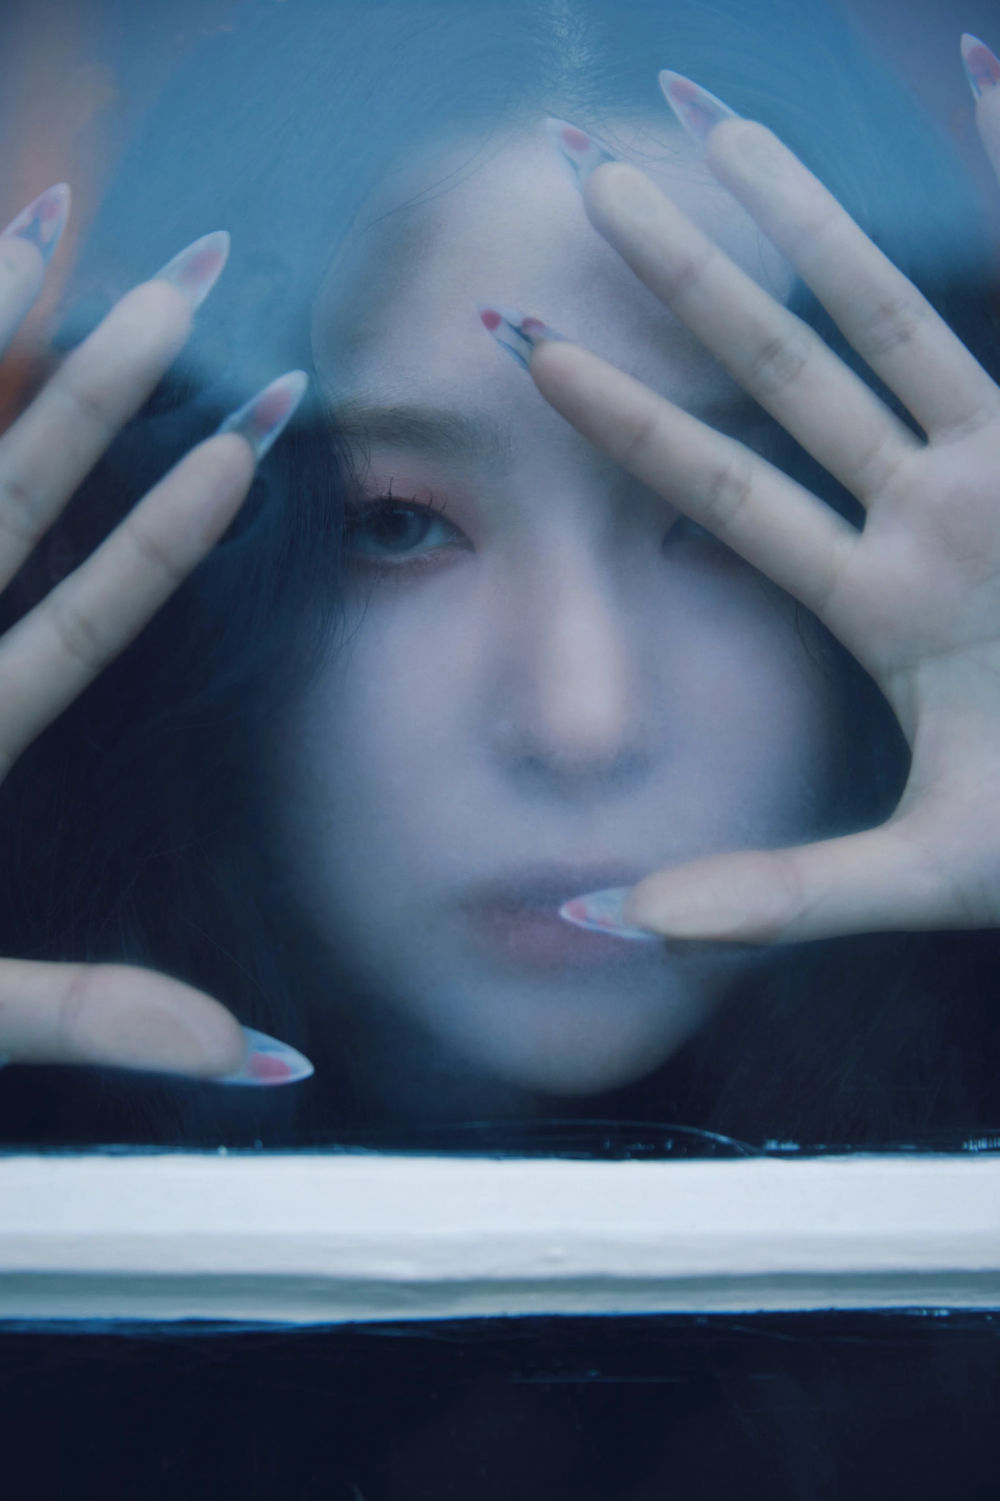 [Дебют] Сыльги из Red Velvet мини-альбом "28 Reasons": музыкальное видео